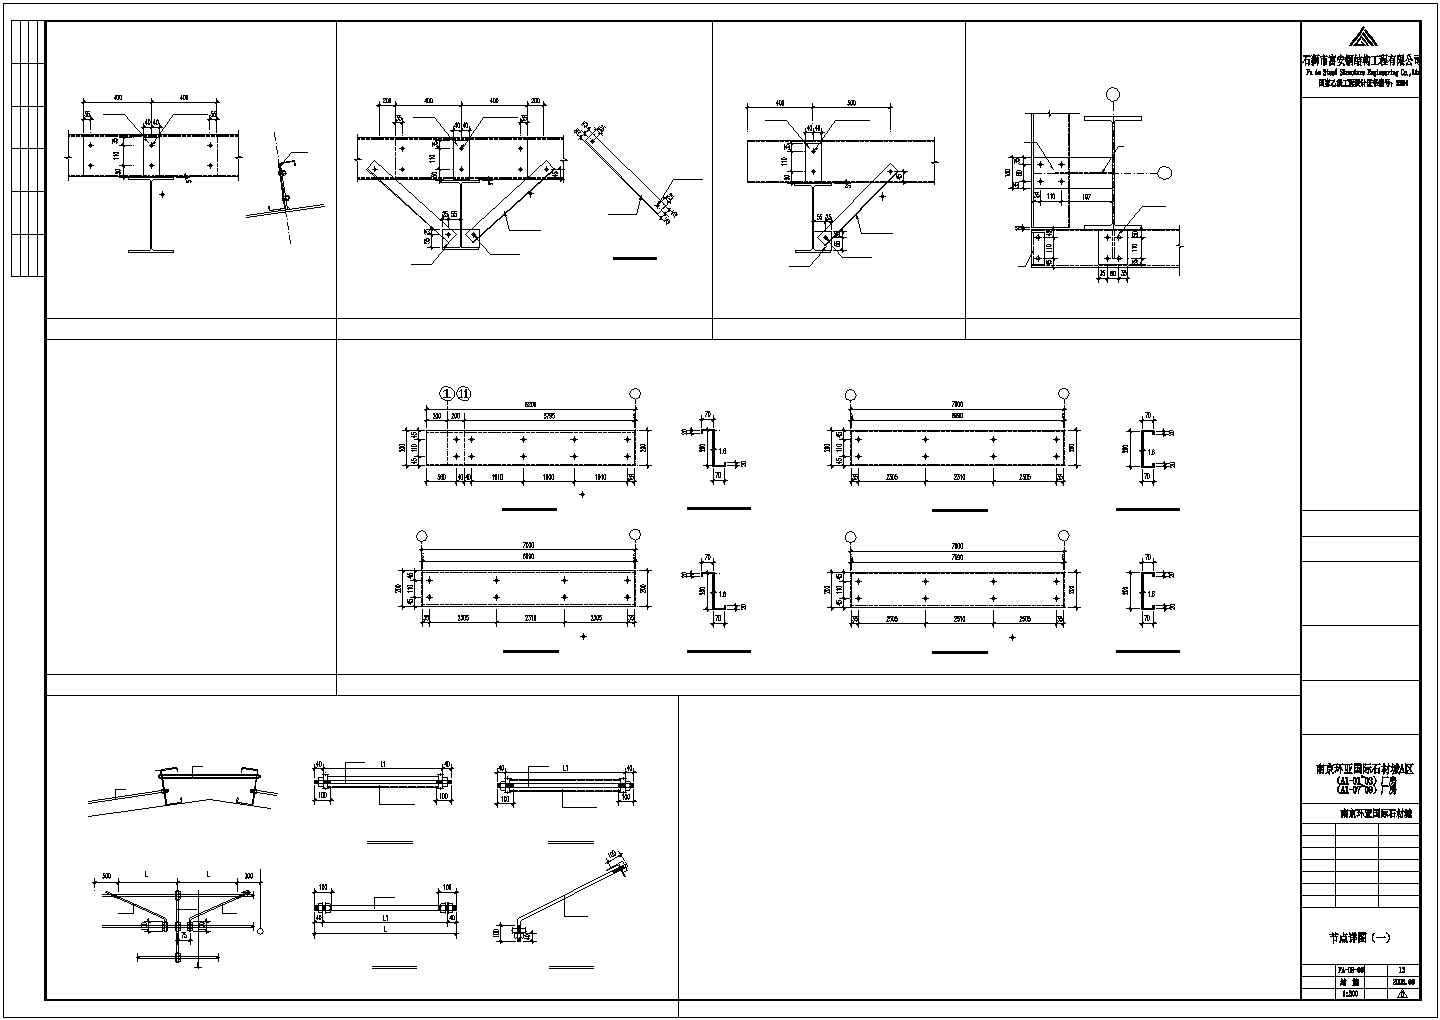 福建炼油化工有限公司办公室钢结构设计图